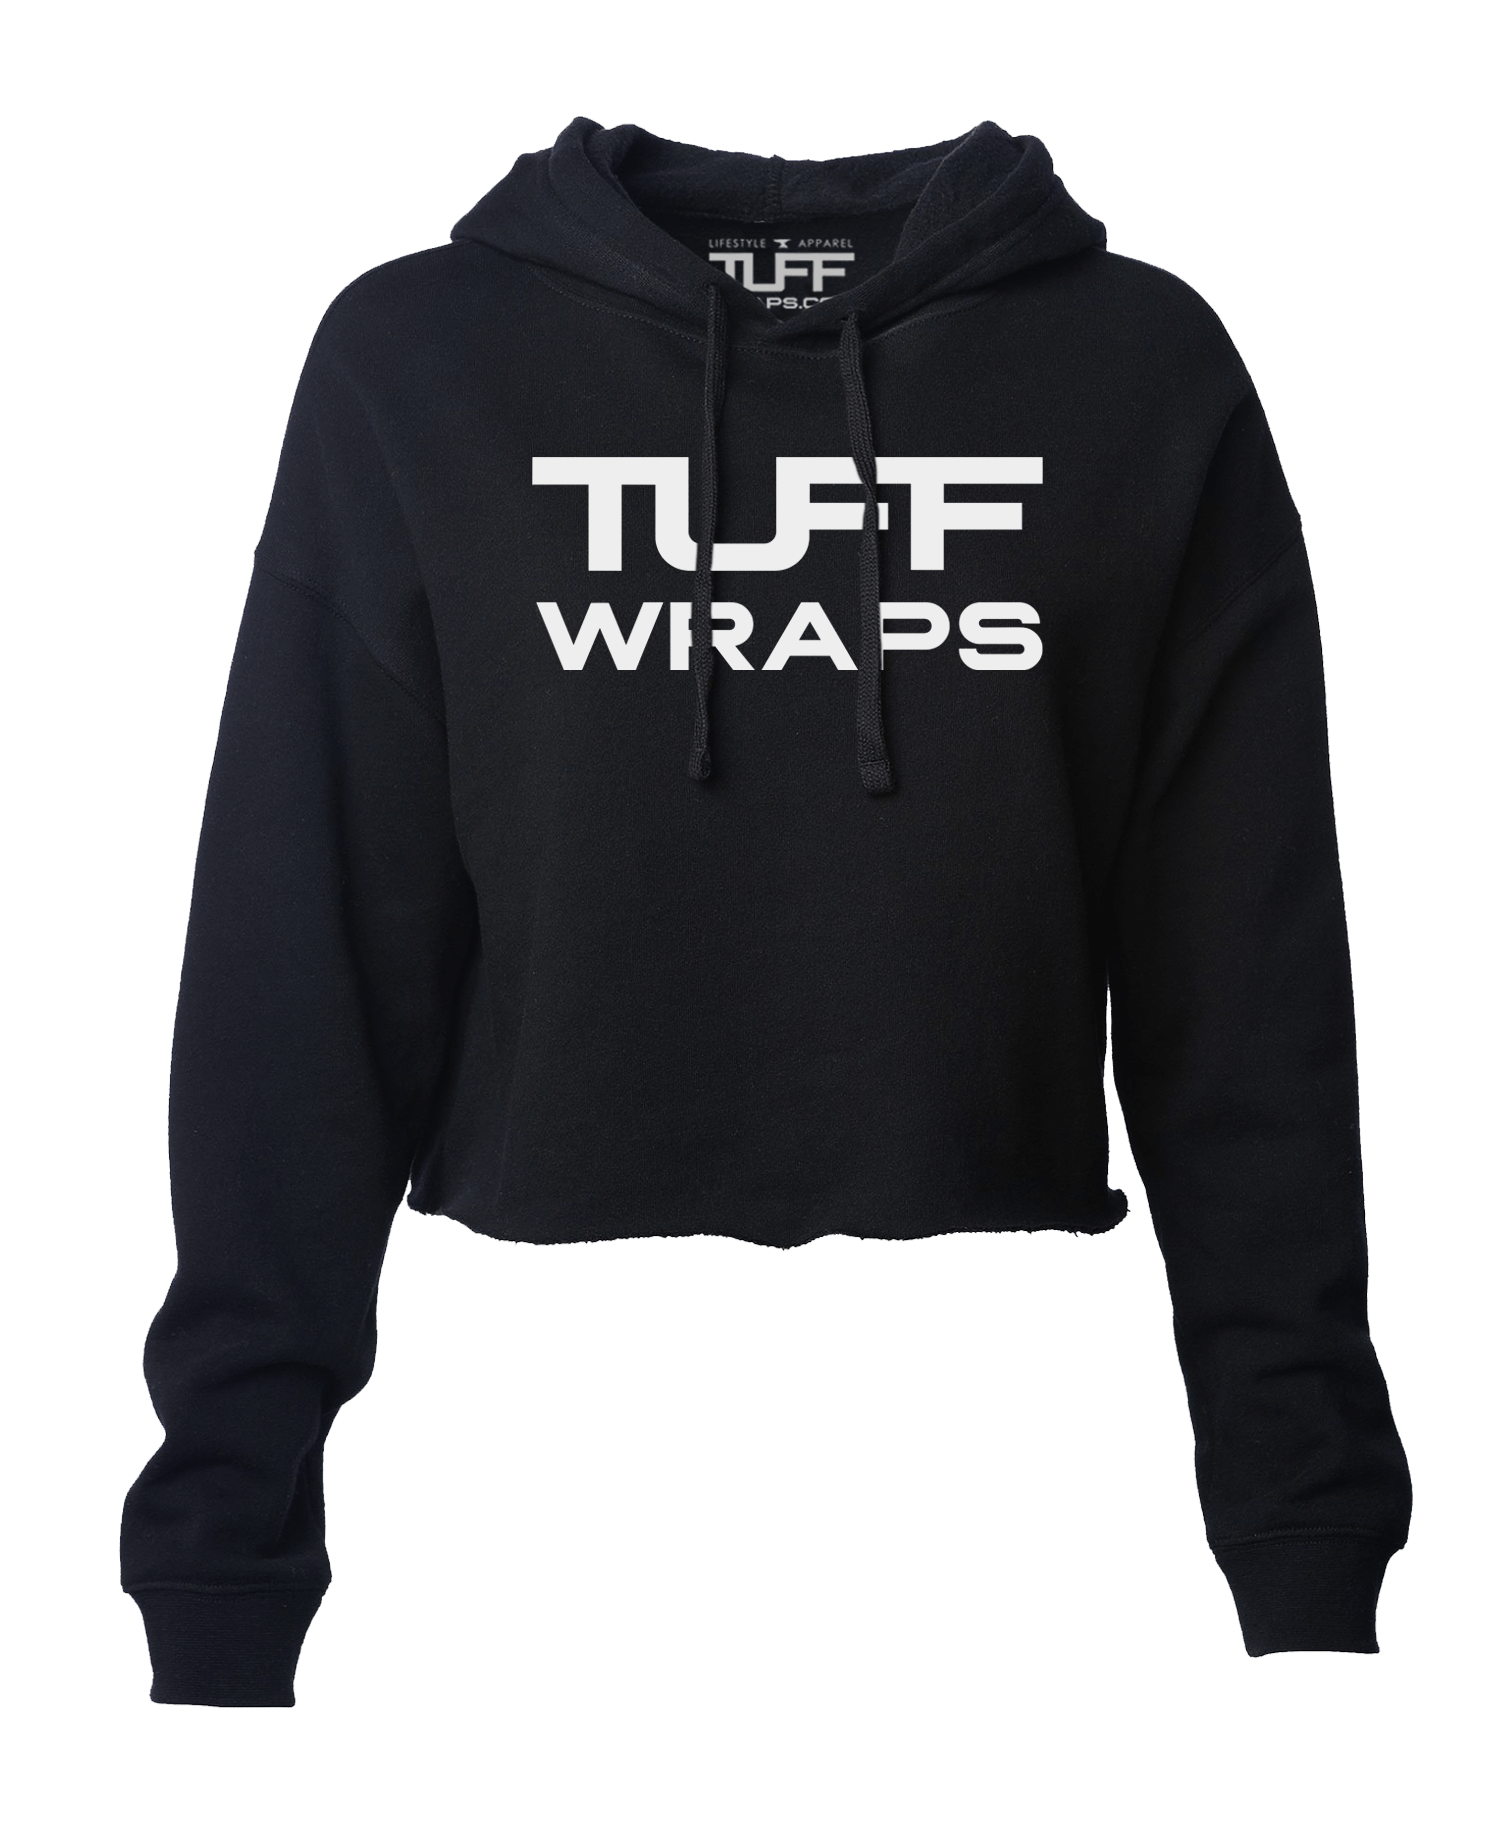 Tuffwraps Global Hooded Cropped Fleece Women's Outerwear